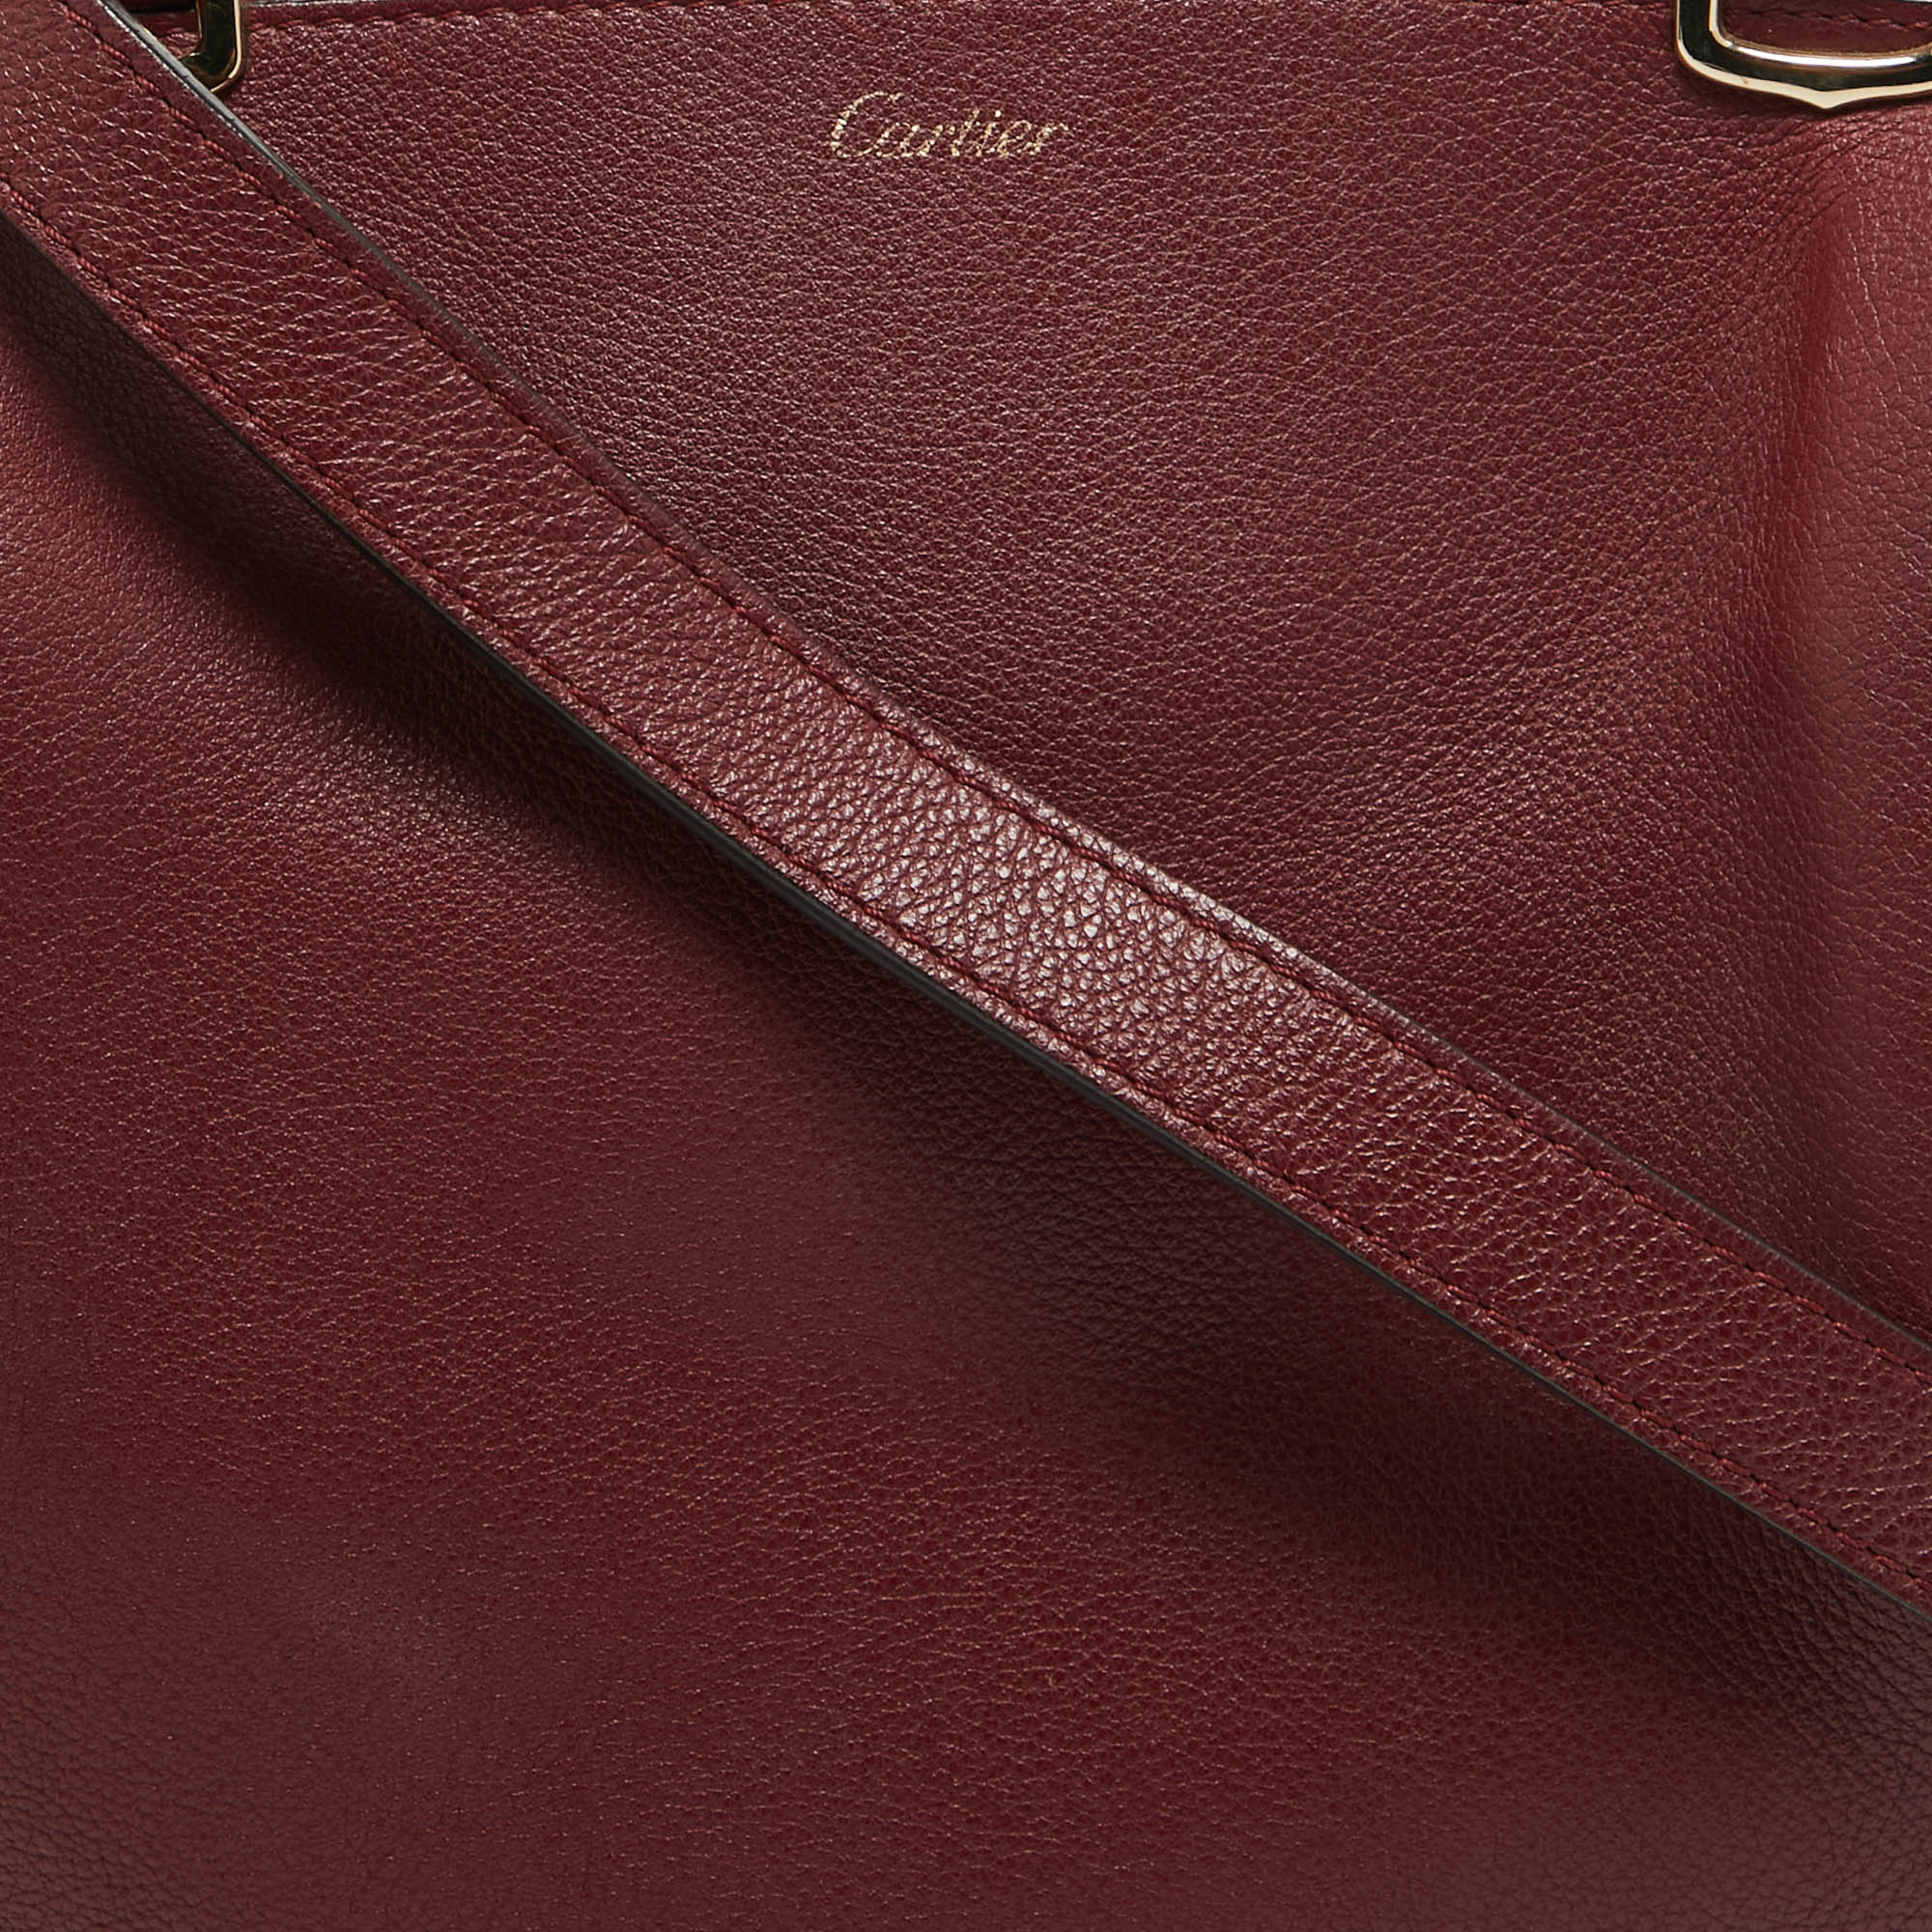 Cartier Dark Red Leather Small C De Cartier Satchel